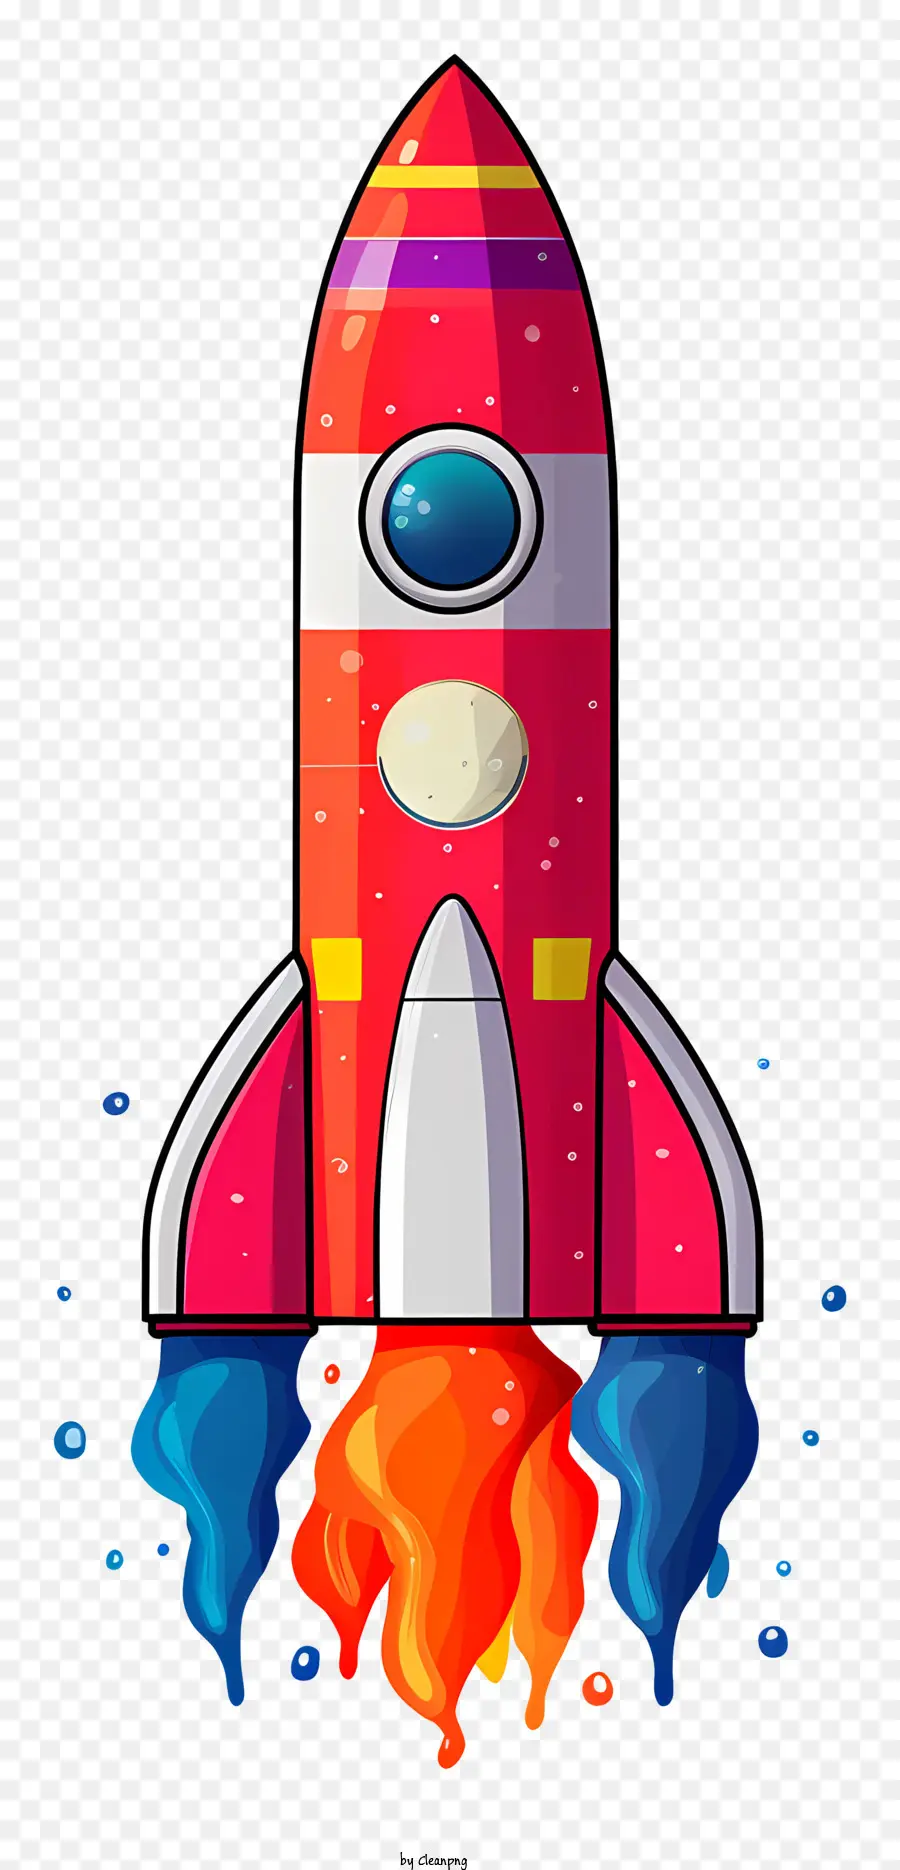 cartoon rocket ship rocket ship illustration red and orange stripes blue stripe pointed nose